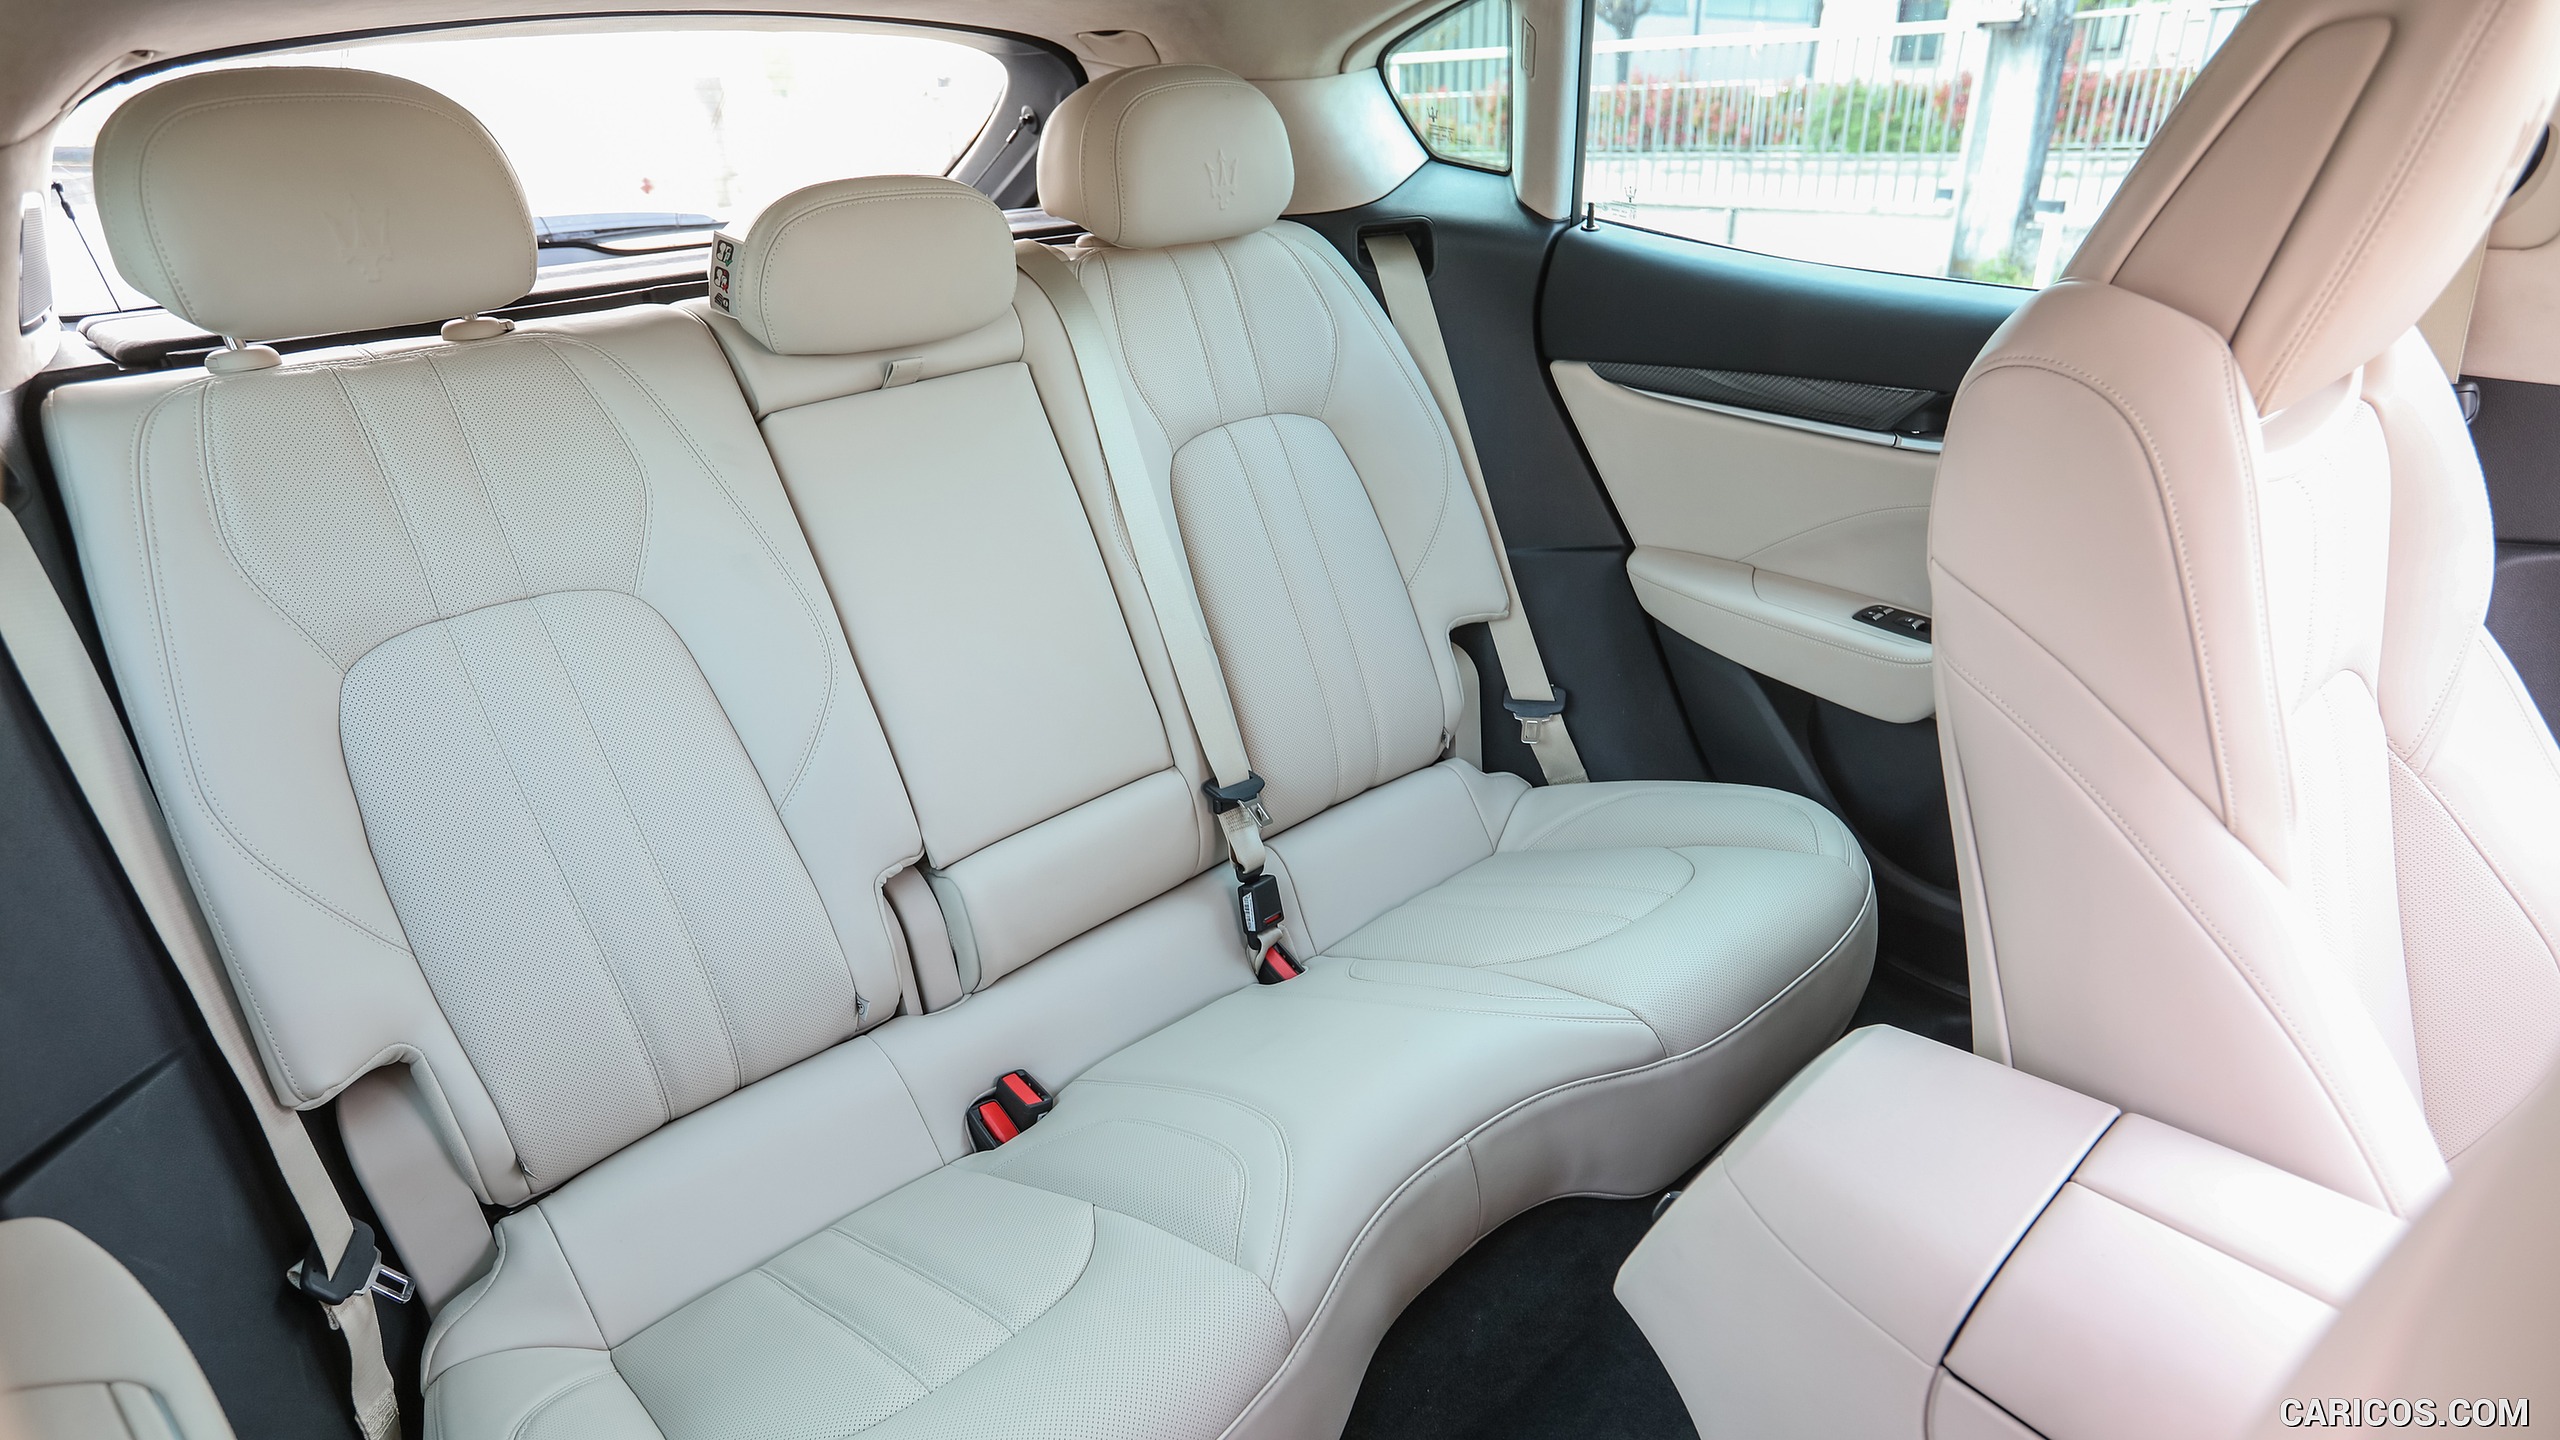 2017 Maserati Levante SUV - Interior, Rear Seats, #110 of 119